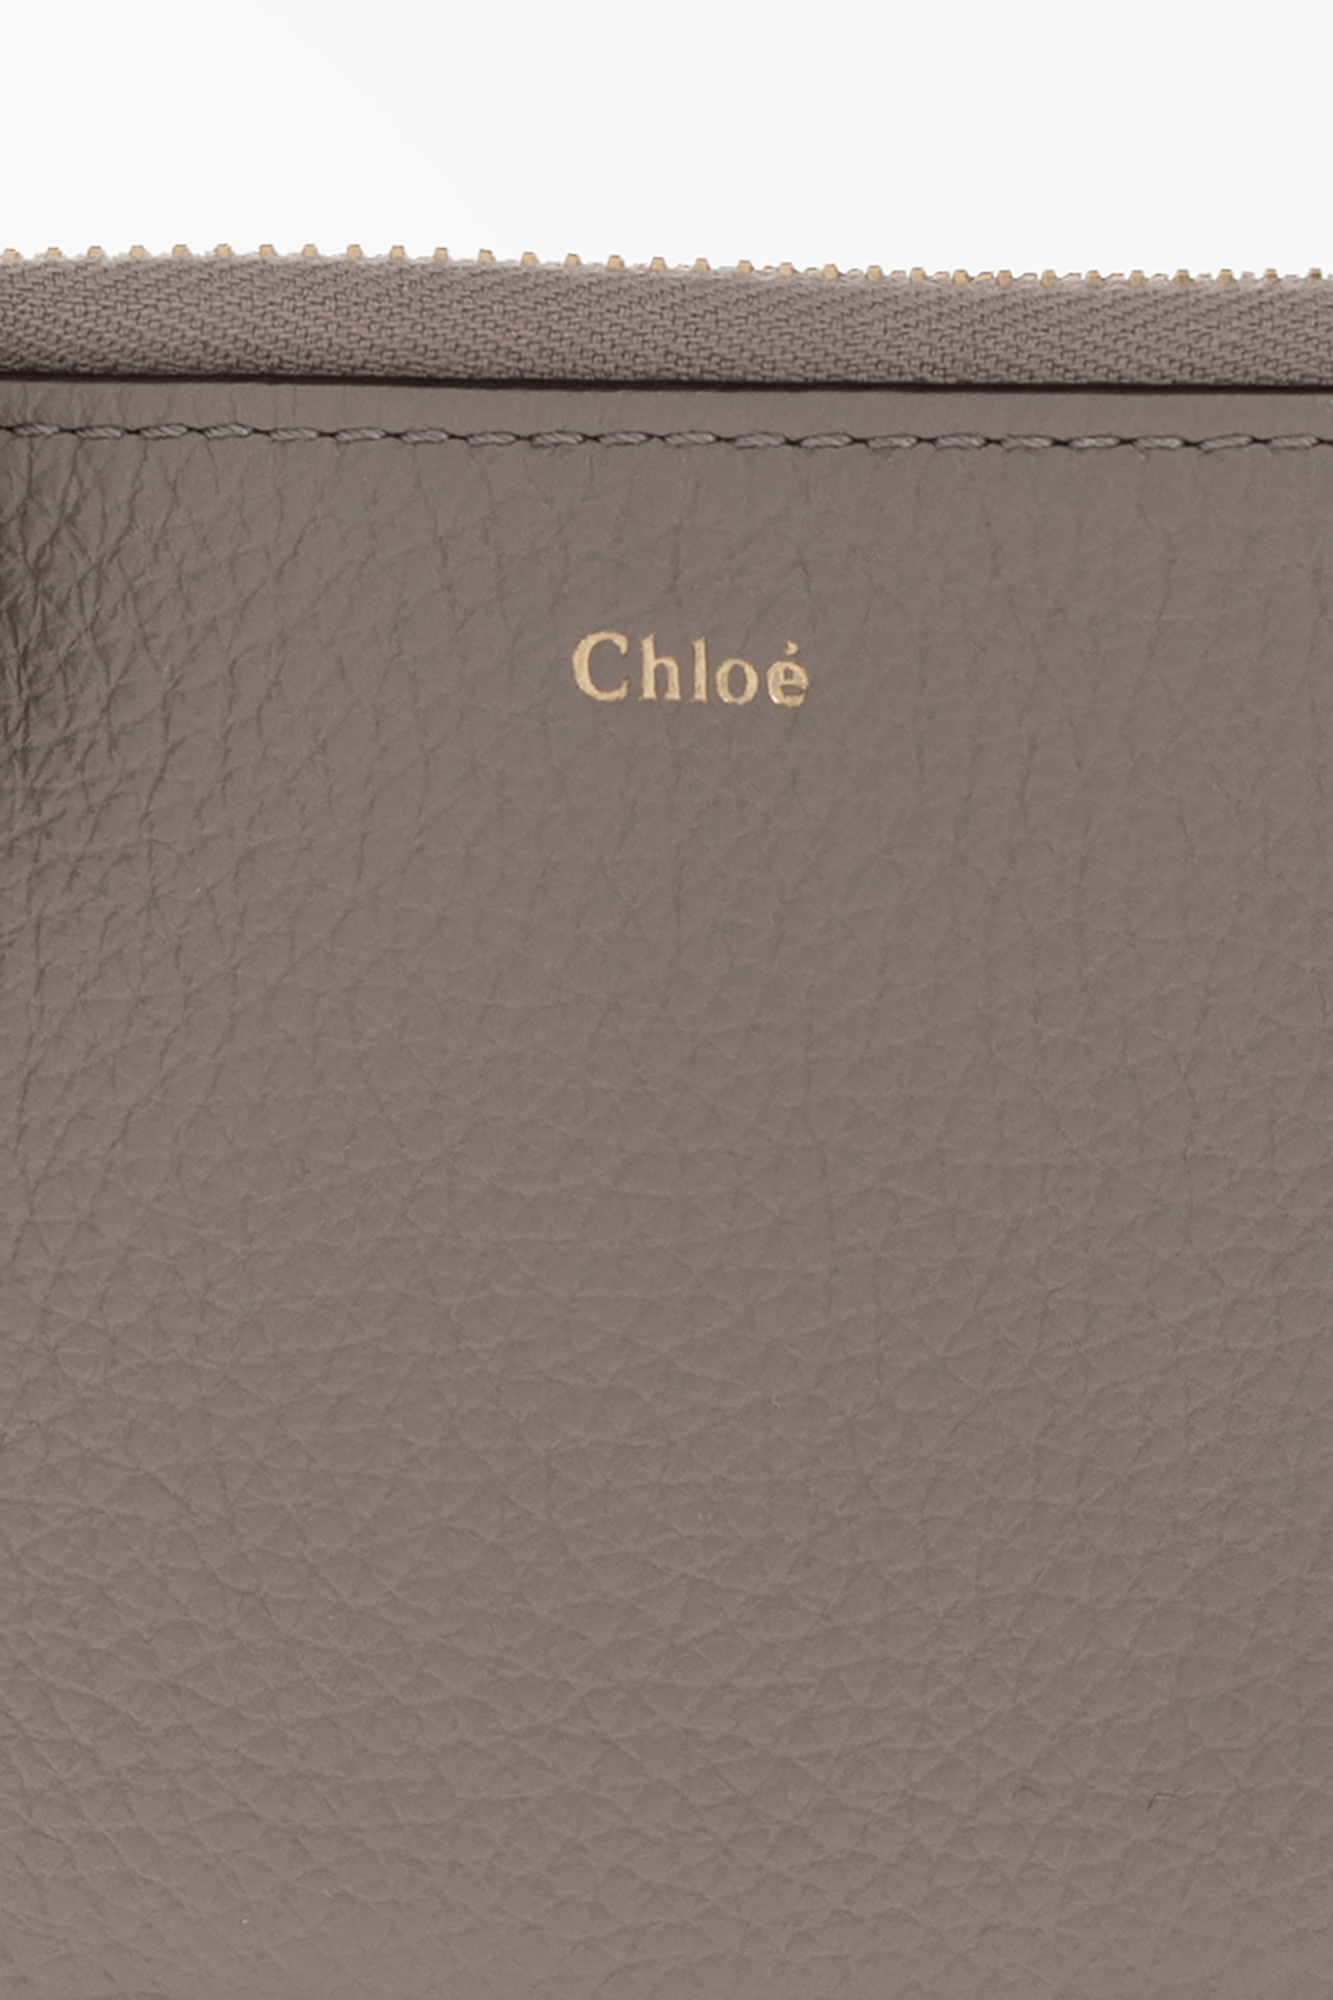 Chloé ‘Alphabet Small’ card holder